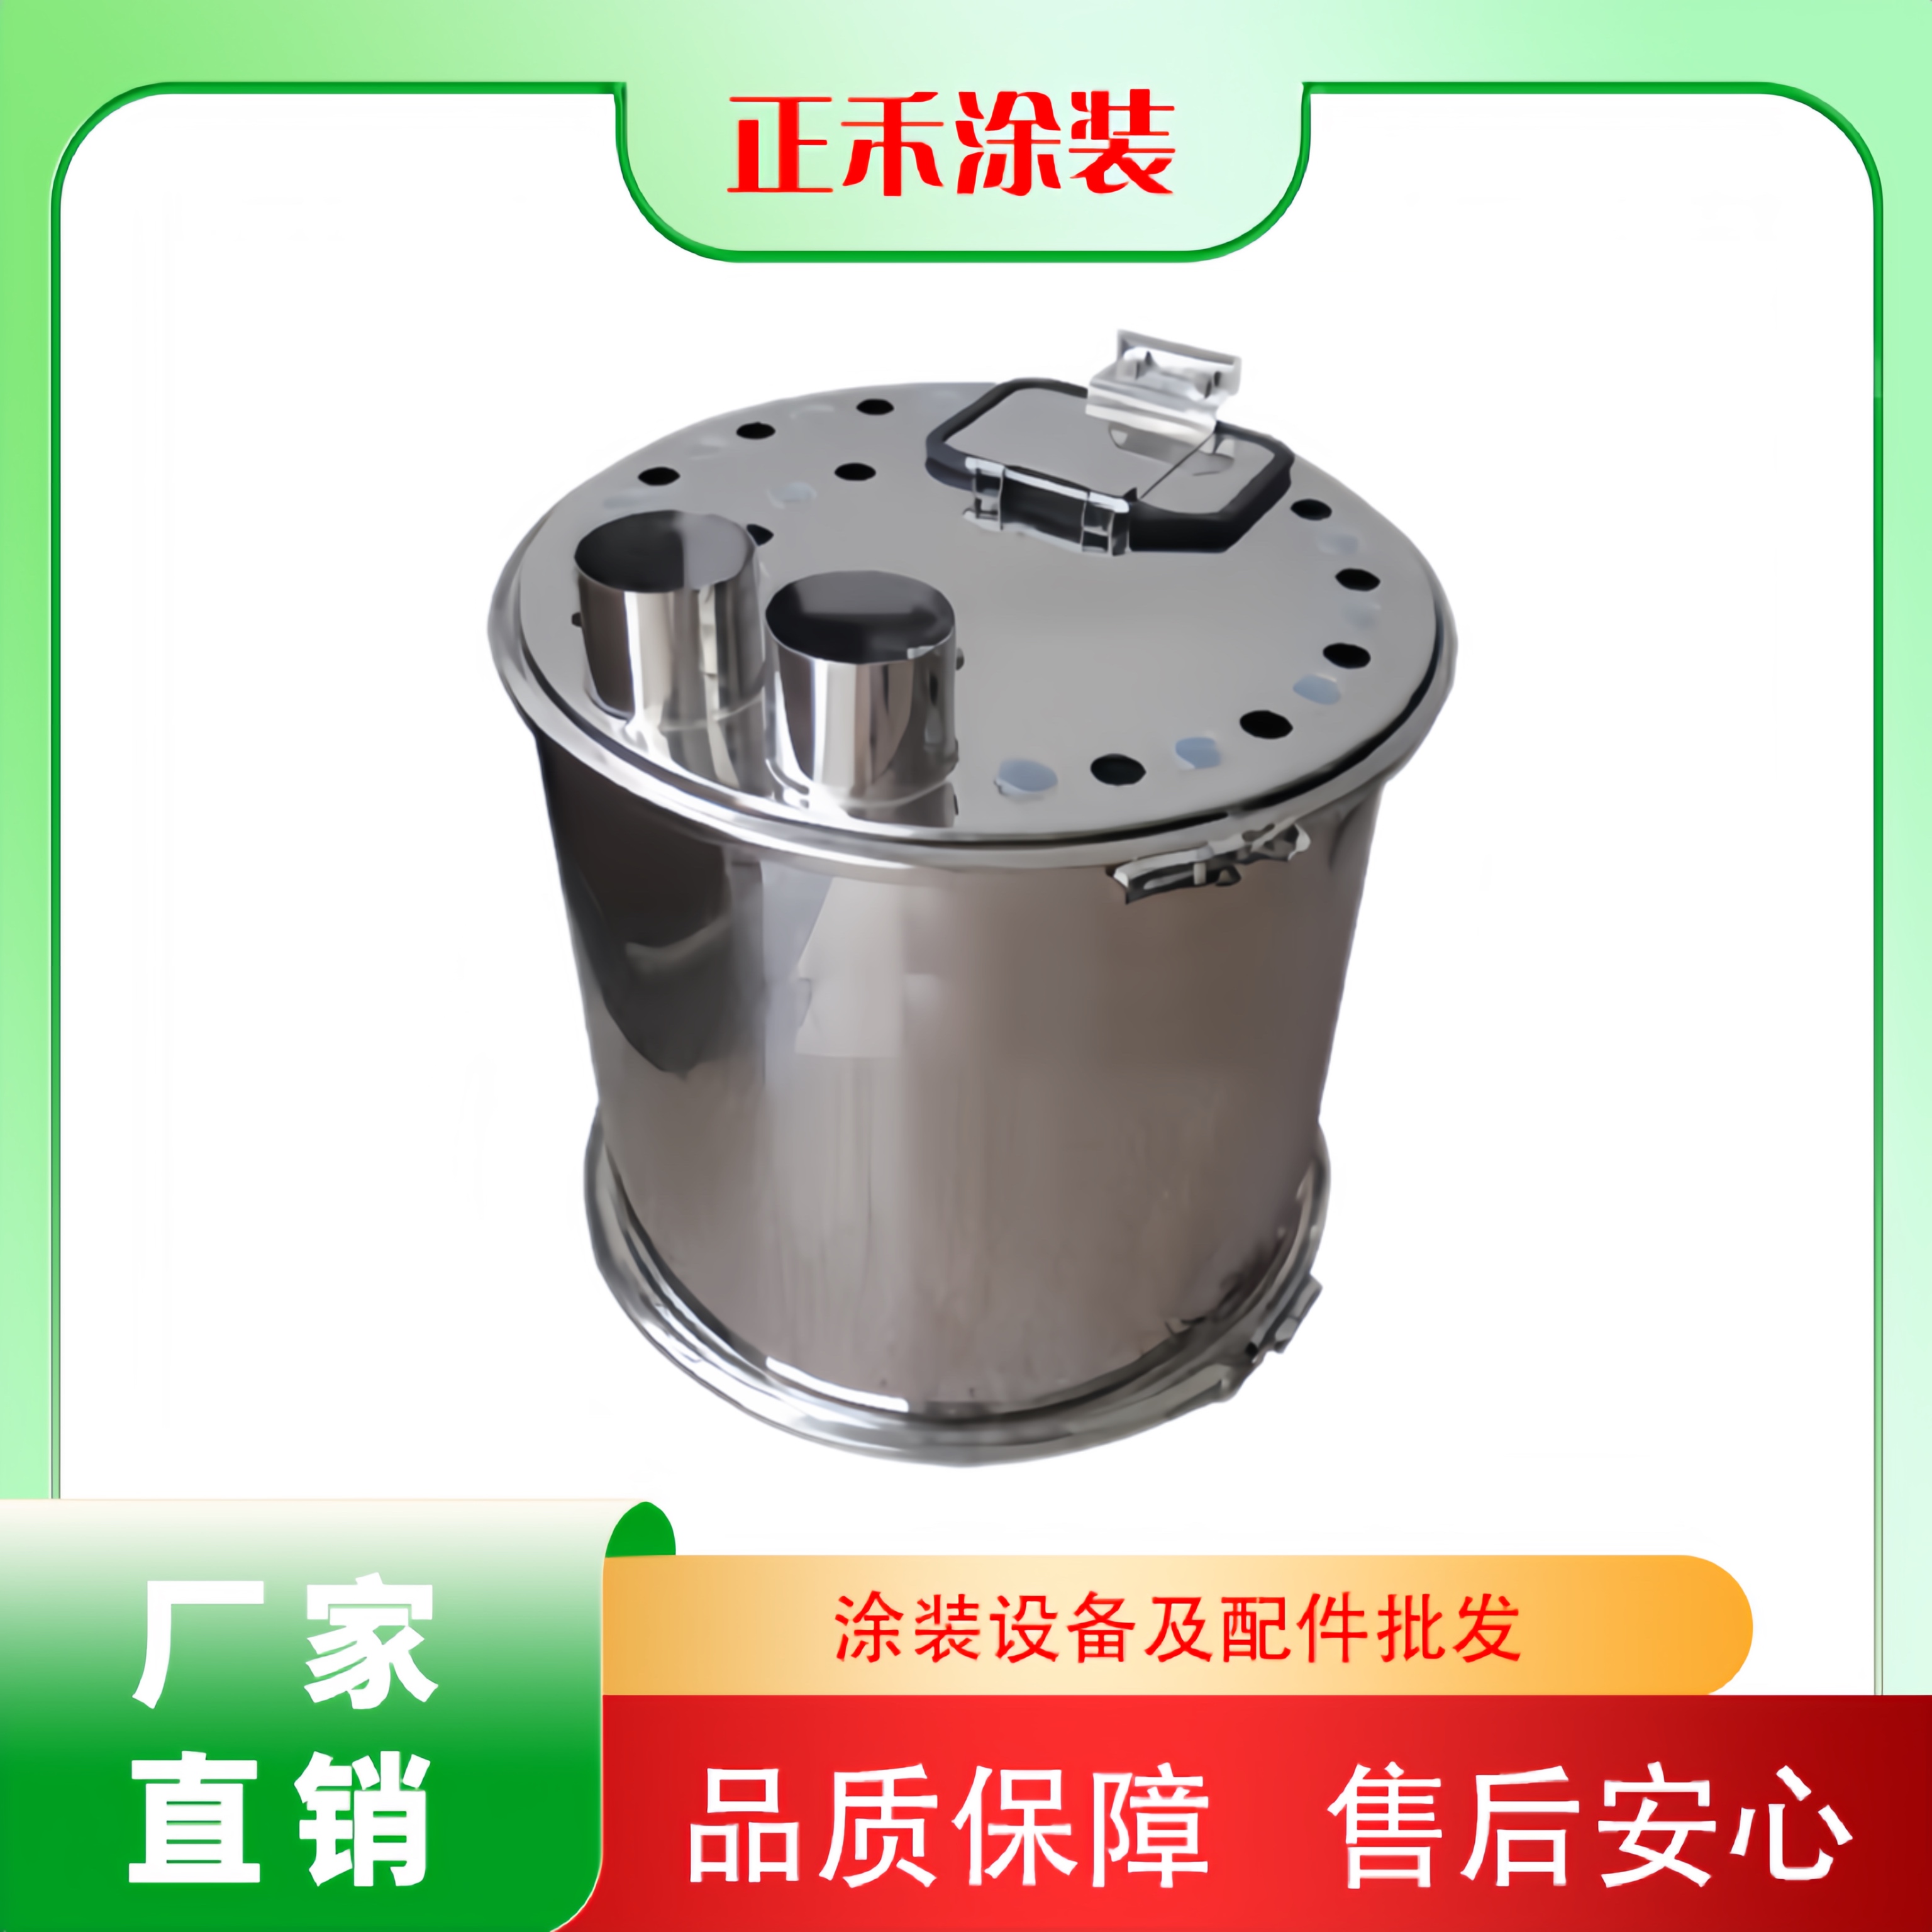 静电喷涂供粉桶流化桶圆形方形不锈钢供粉桶喷塑机粉桶硫化大粉桶 - 图2